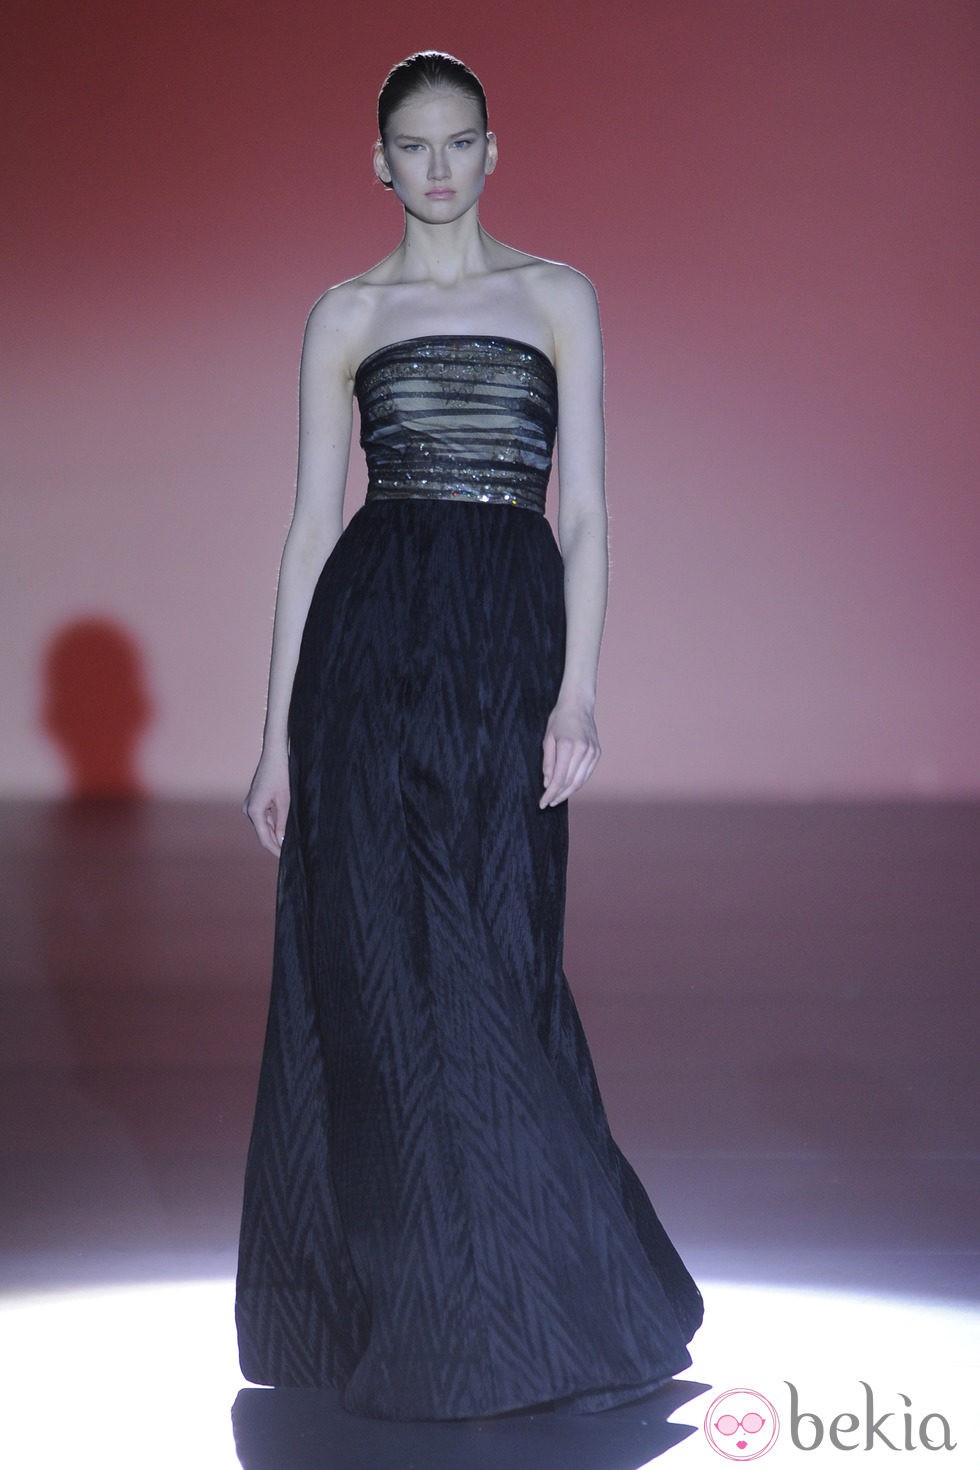 Vestido negro de la colección otoño/invierno 2014/2015 de Hannibal Laguna en Madrid Fashion Week